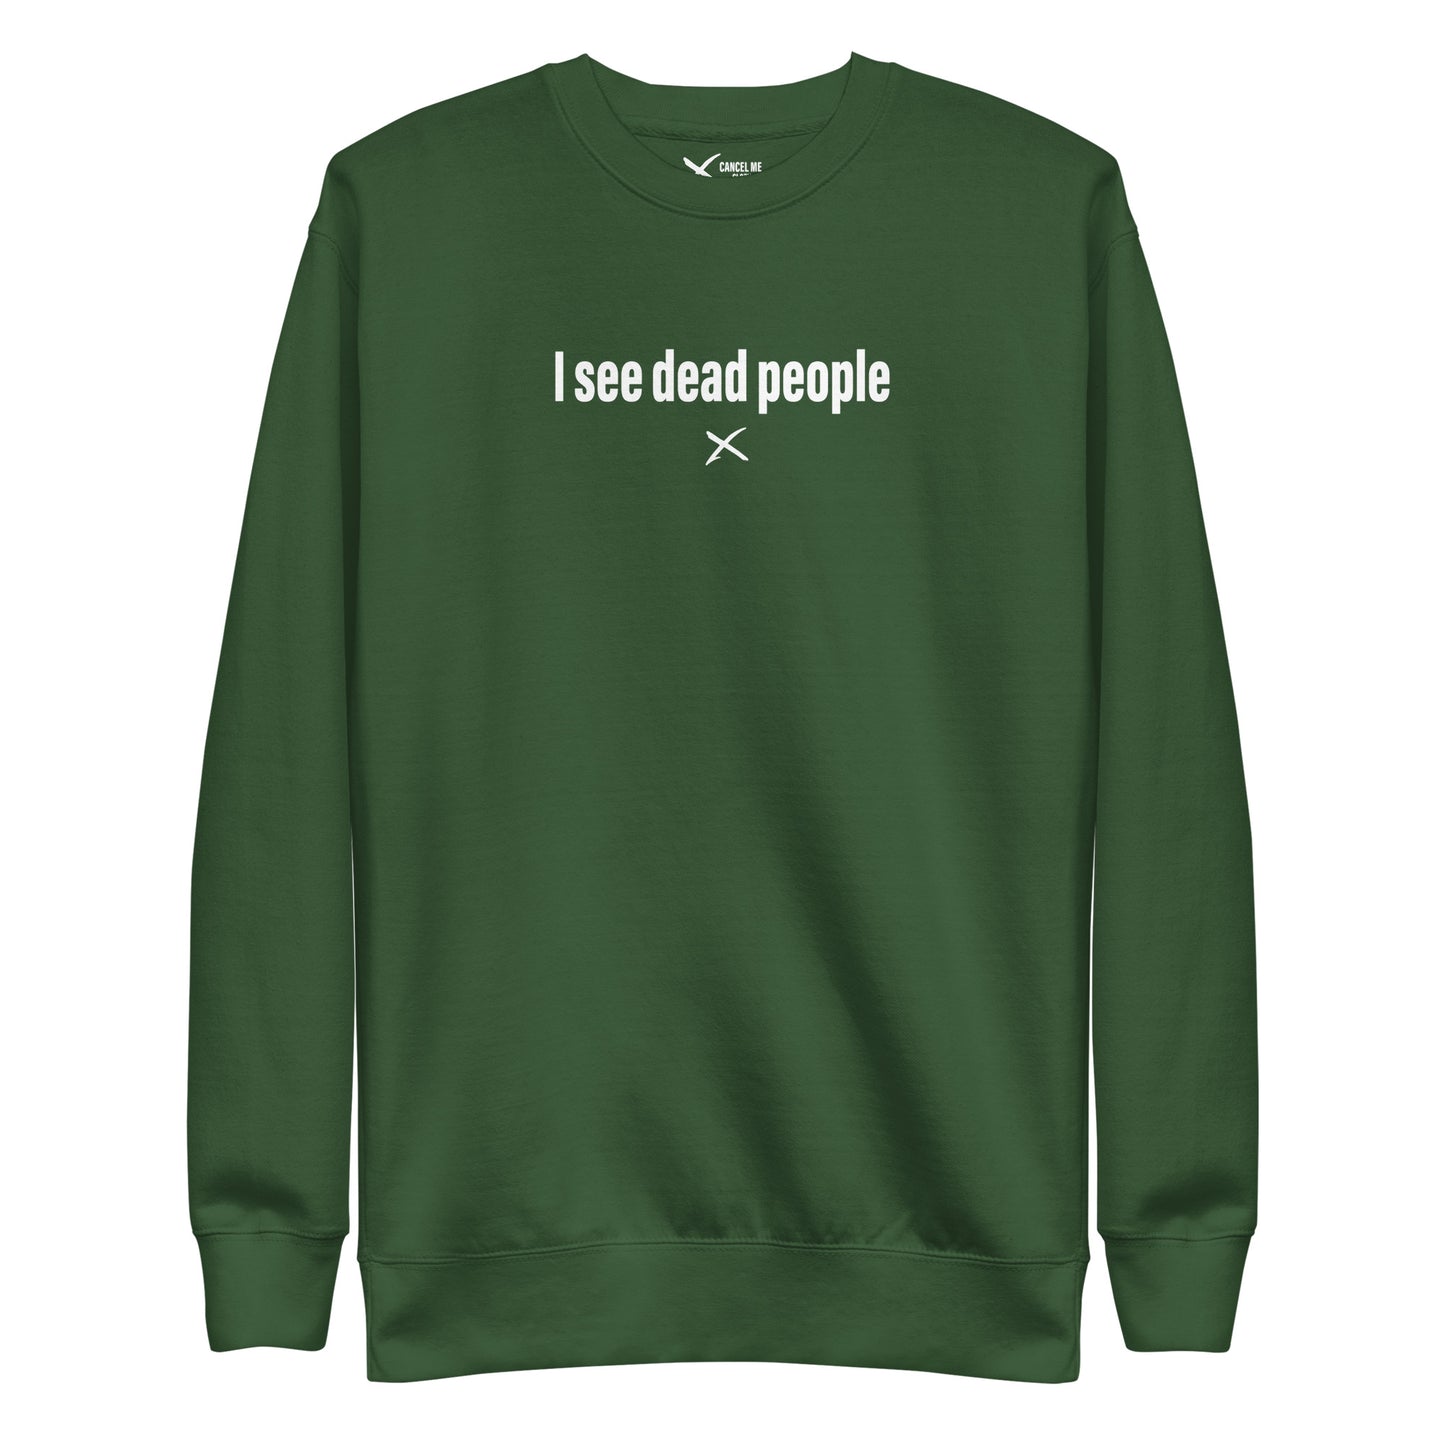 I see dead people - Sweatshirt